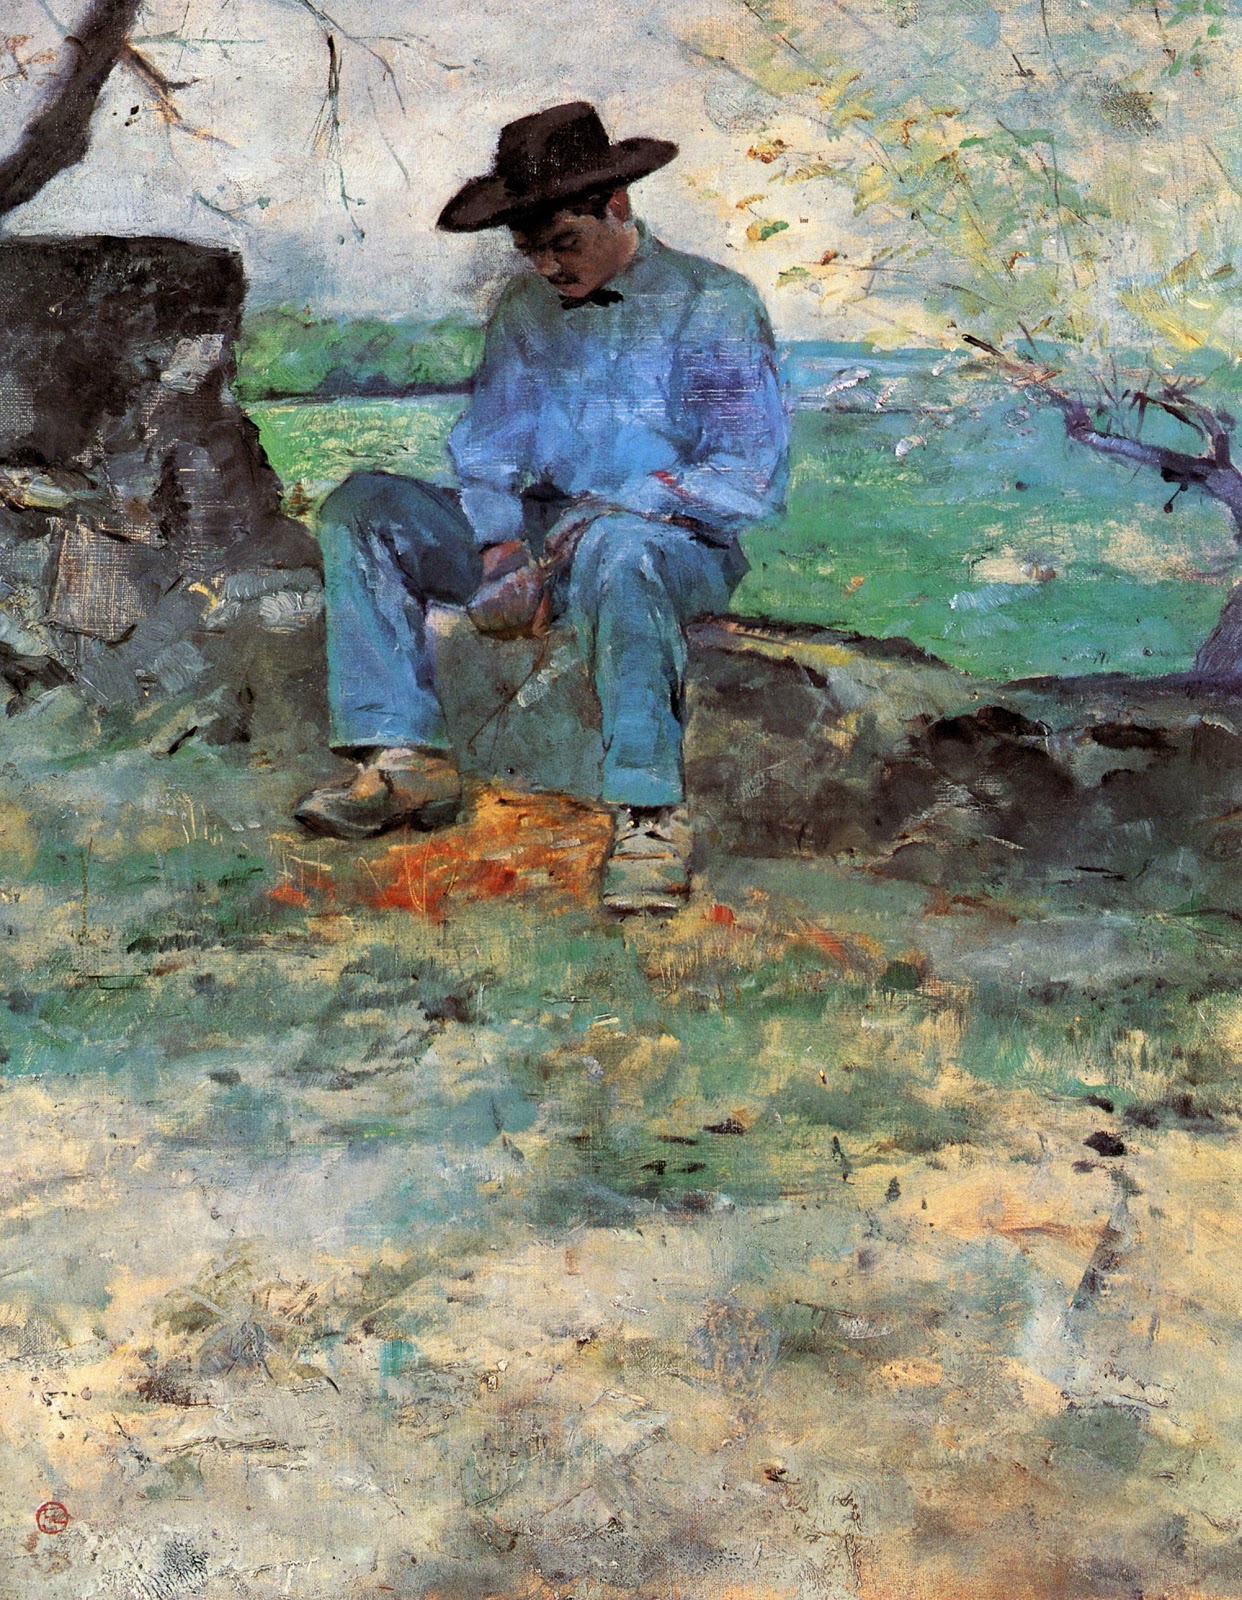 Henri+de+Toulouse+Lautrec-1864-1901 (72).jpg